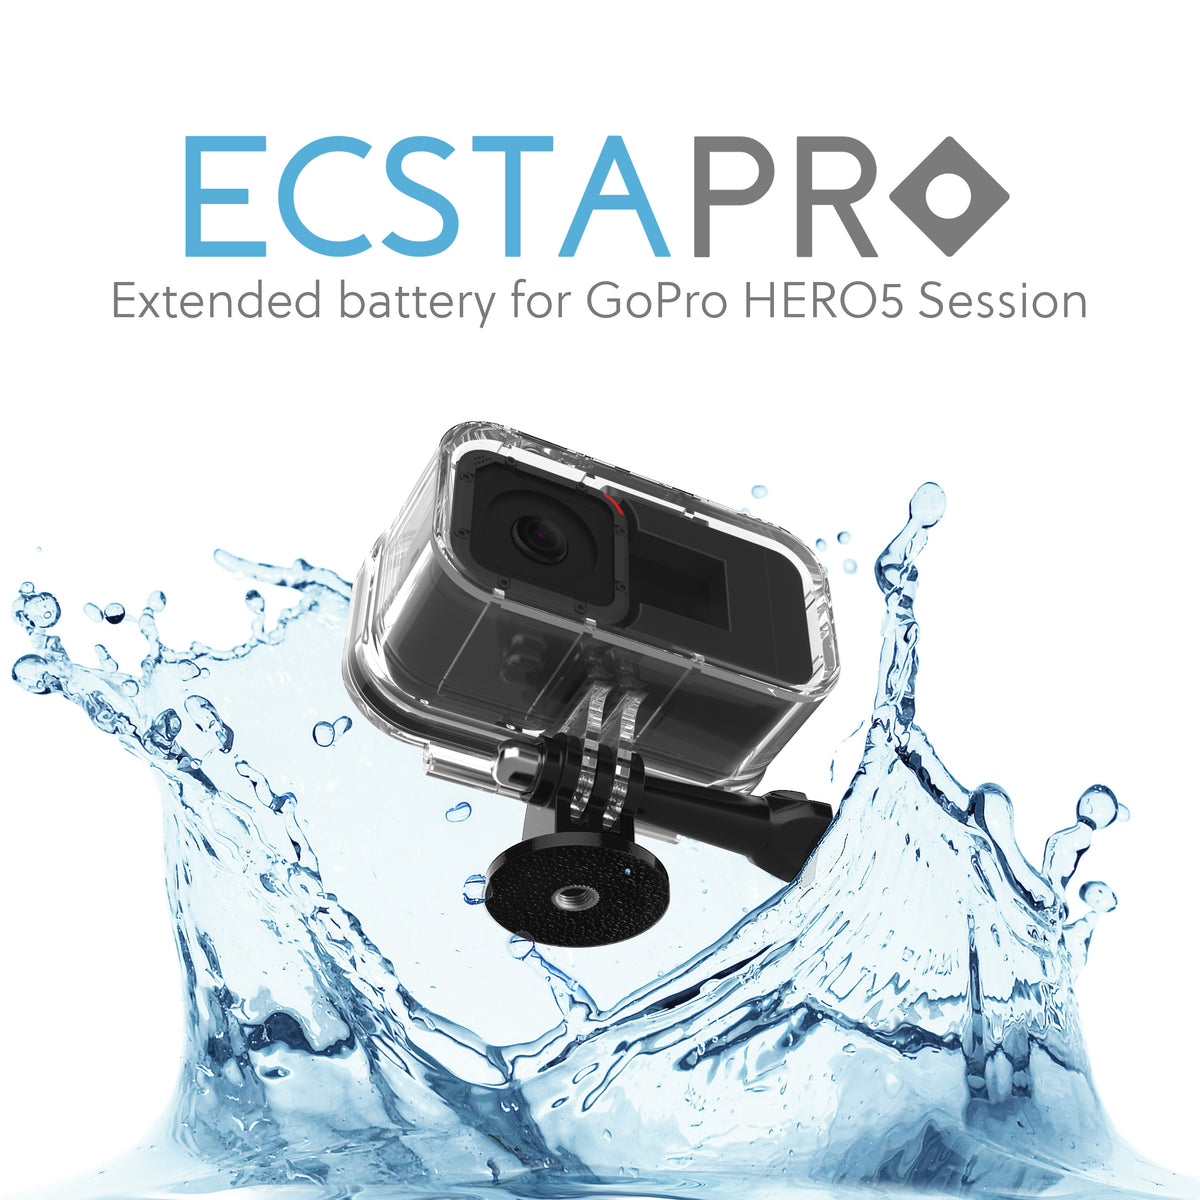 EcstaPro Extended Battery for GoPro HERO5 Session